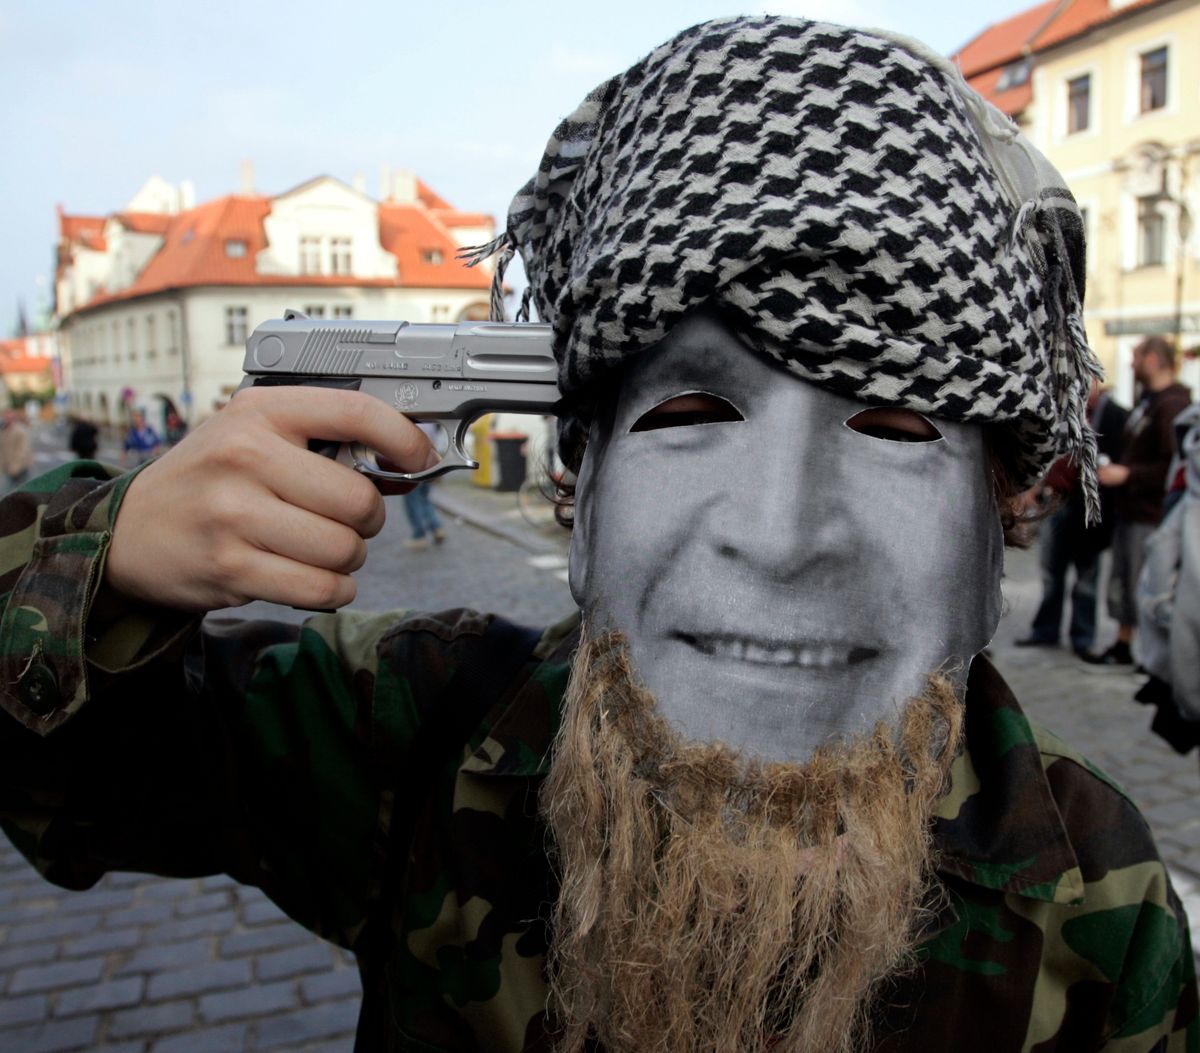 Czeska konstytucja pozwoli cywilom na użycie broni. To element walki z terroryzmem